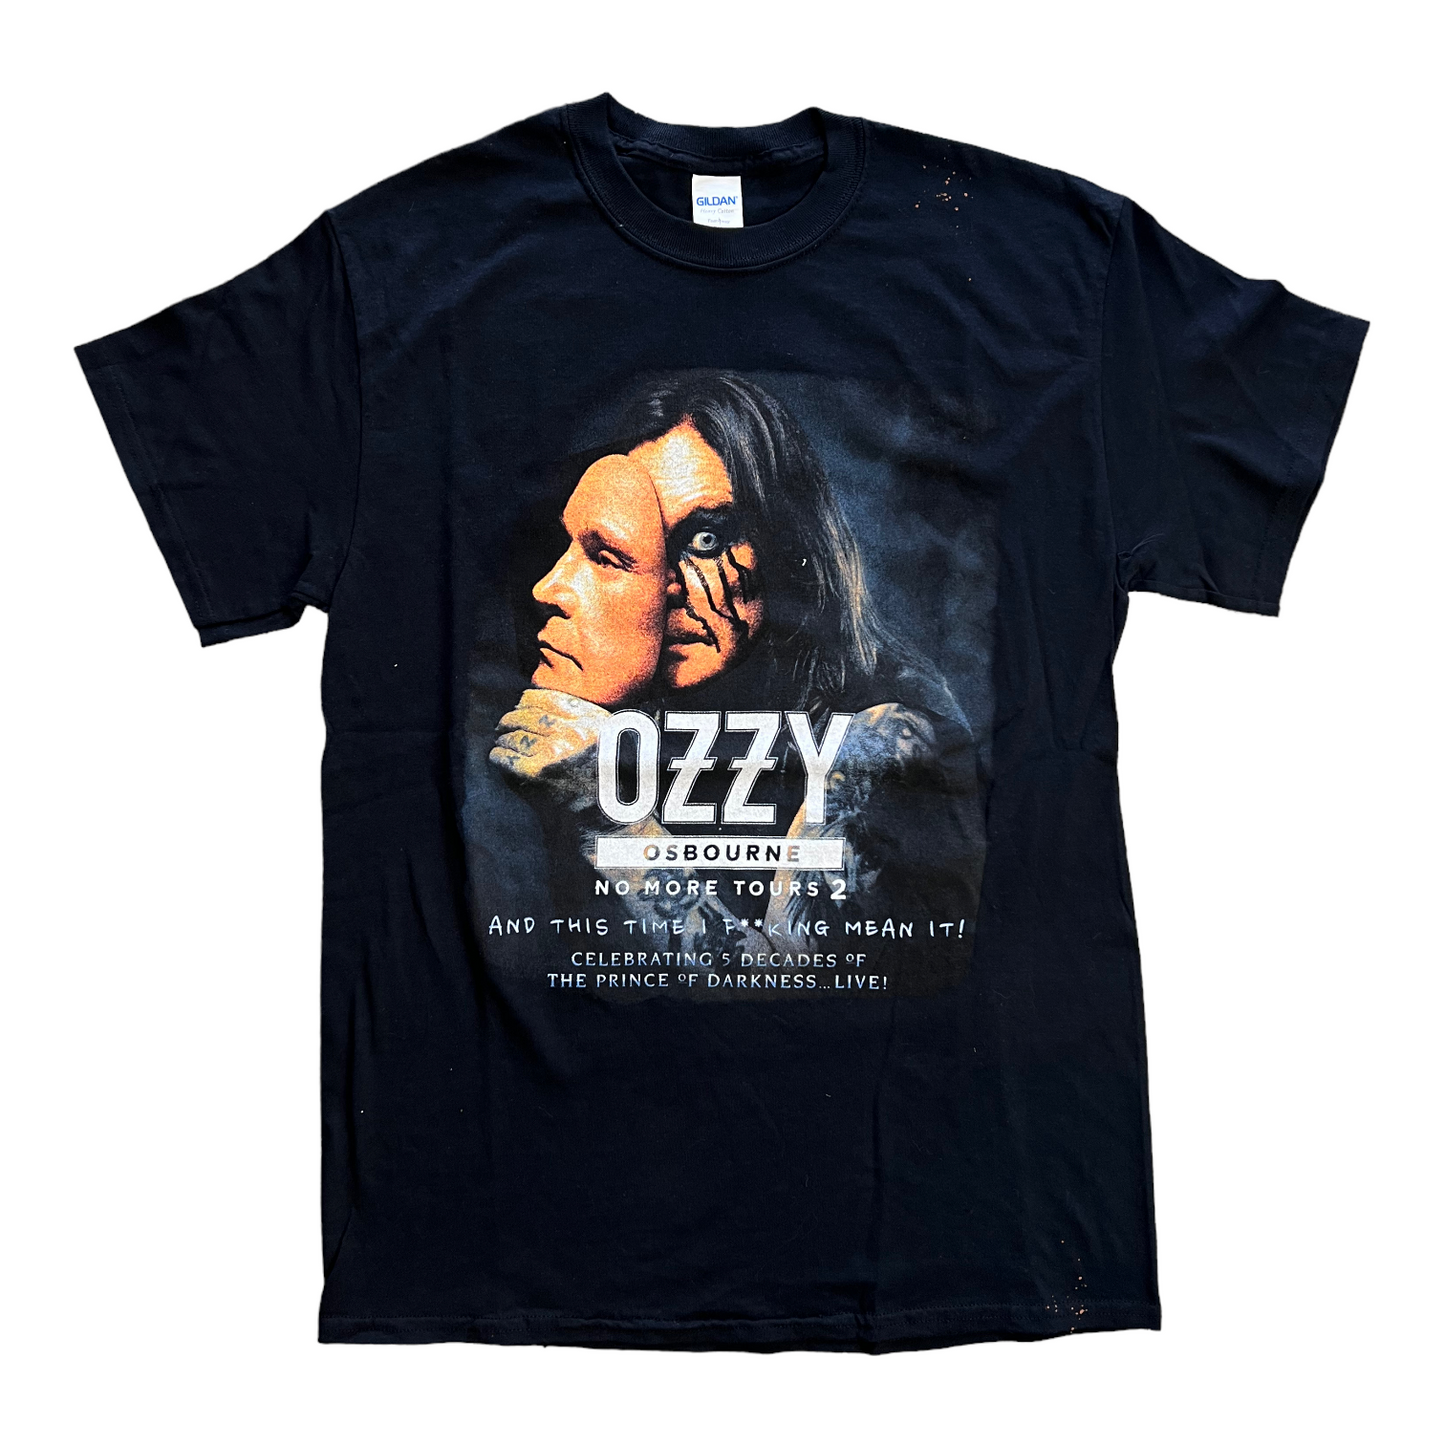 2018 Ozzy Osbourne no more tours 2 shirt